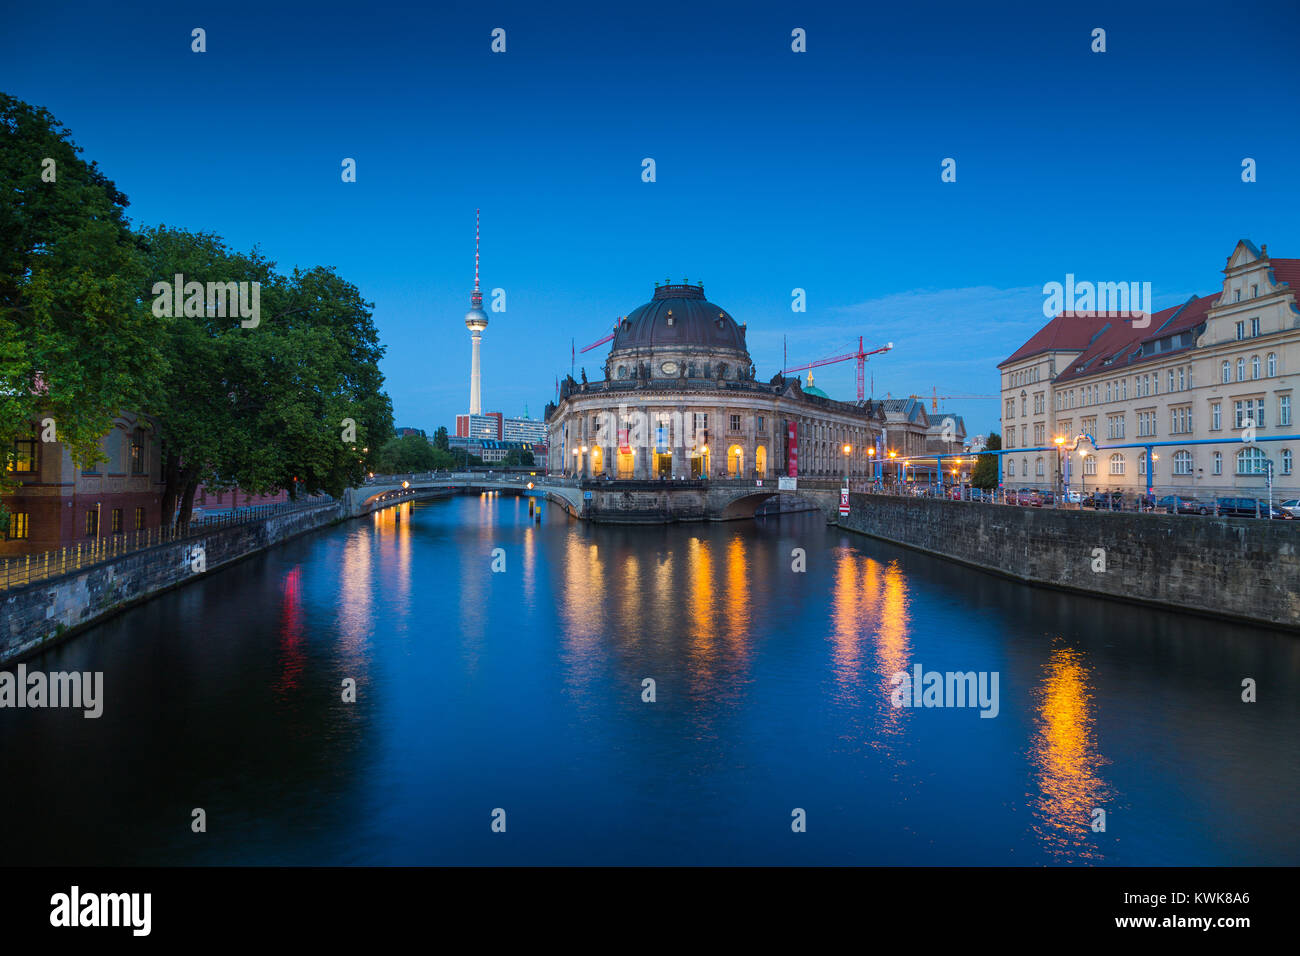 Schönen Blick auf berühmte Bode Museum im historischen Museumsinsel () mit Fernsehturm und Spree in der Dämmerung, Berlin, Deutschland Stockfoto